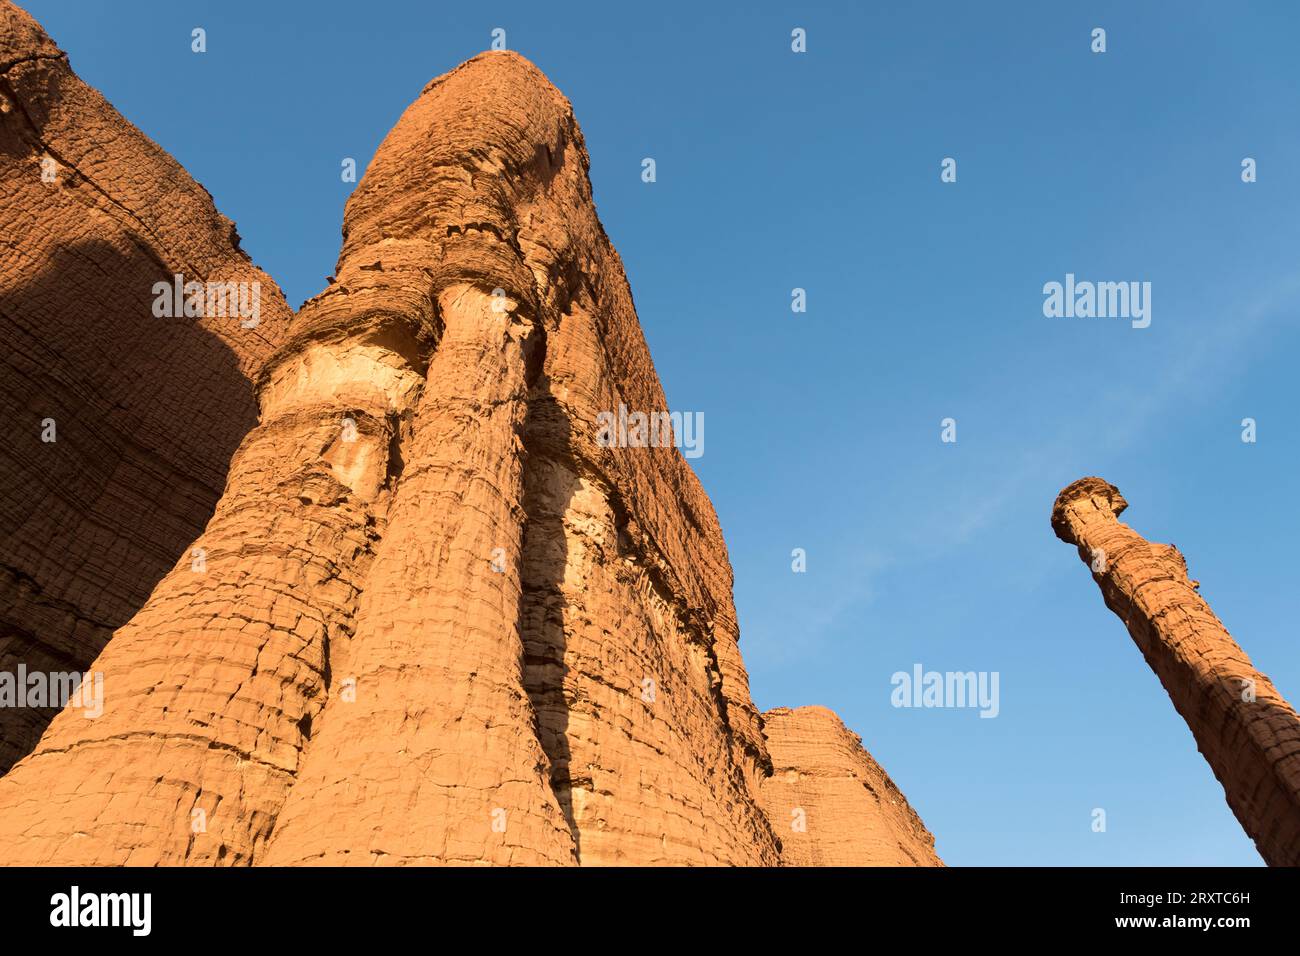 Die erstaunliche Ennedi-Wüste, Tschad, Afrika Stockfoto